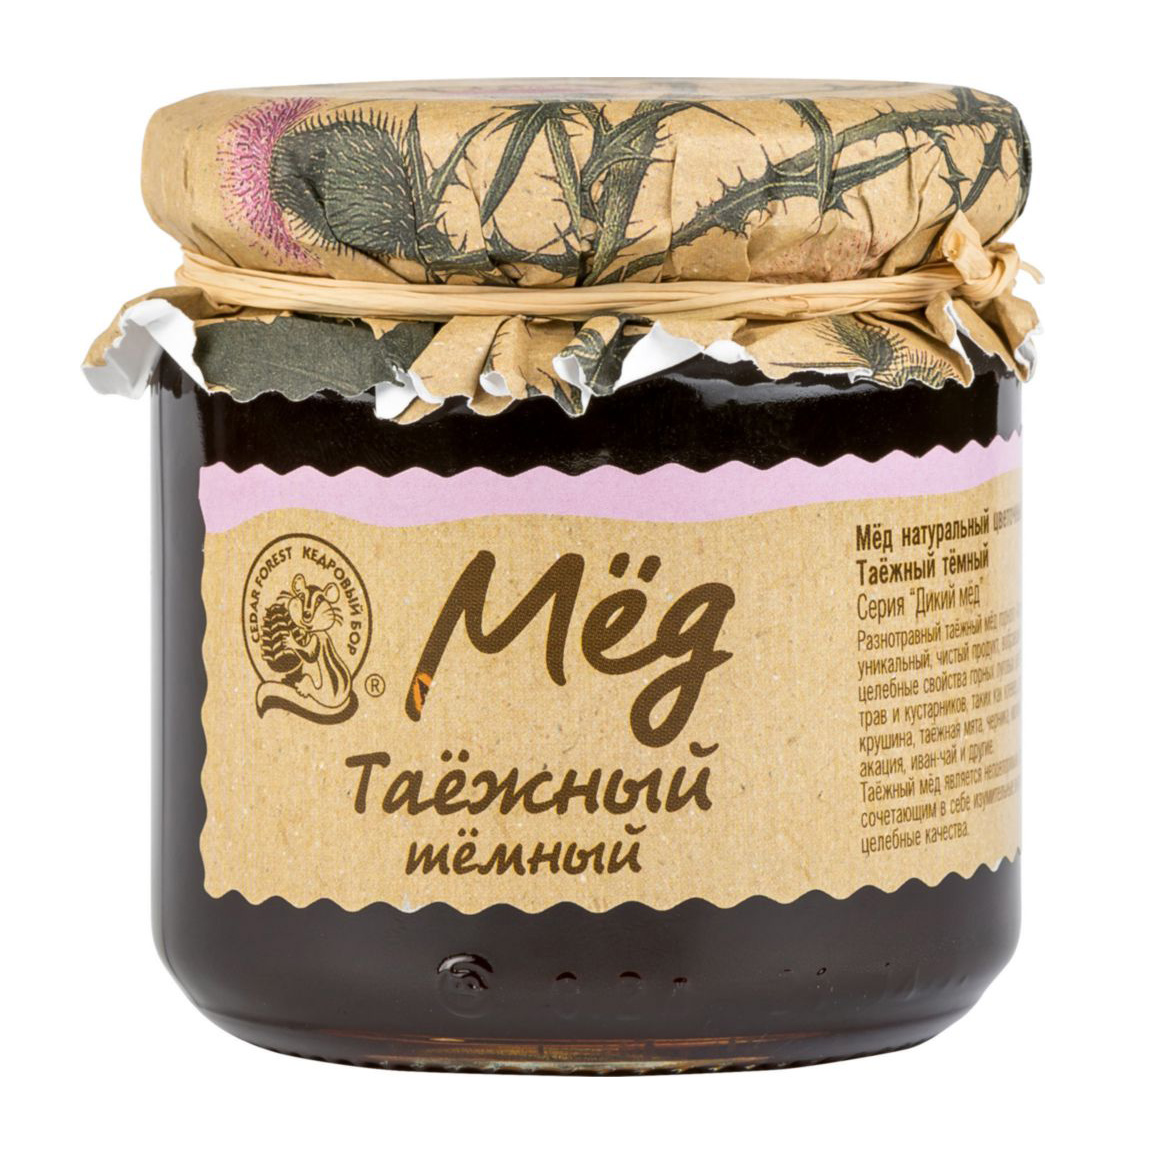 мёд натуральный цветочный кедровый бор гречишный 245 г Мед цветочный Кедровый Бор Таежный 245 г